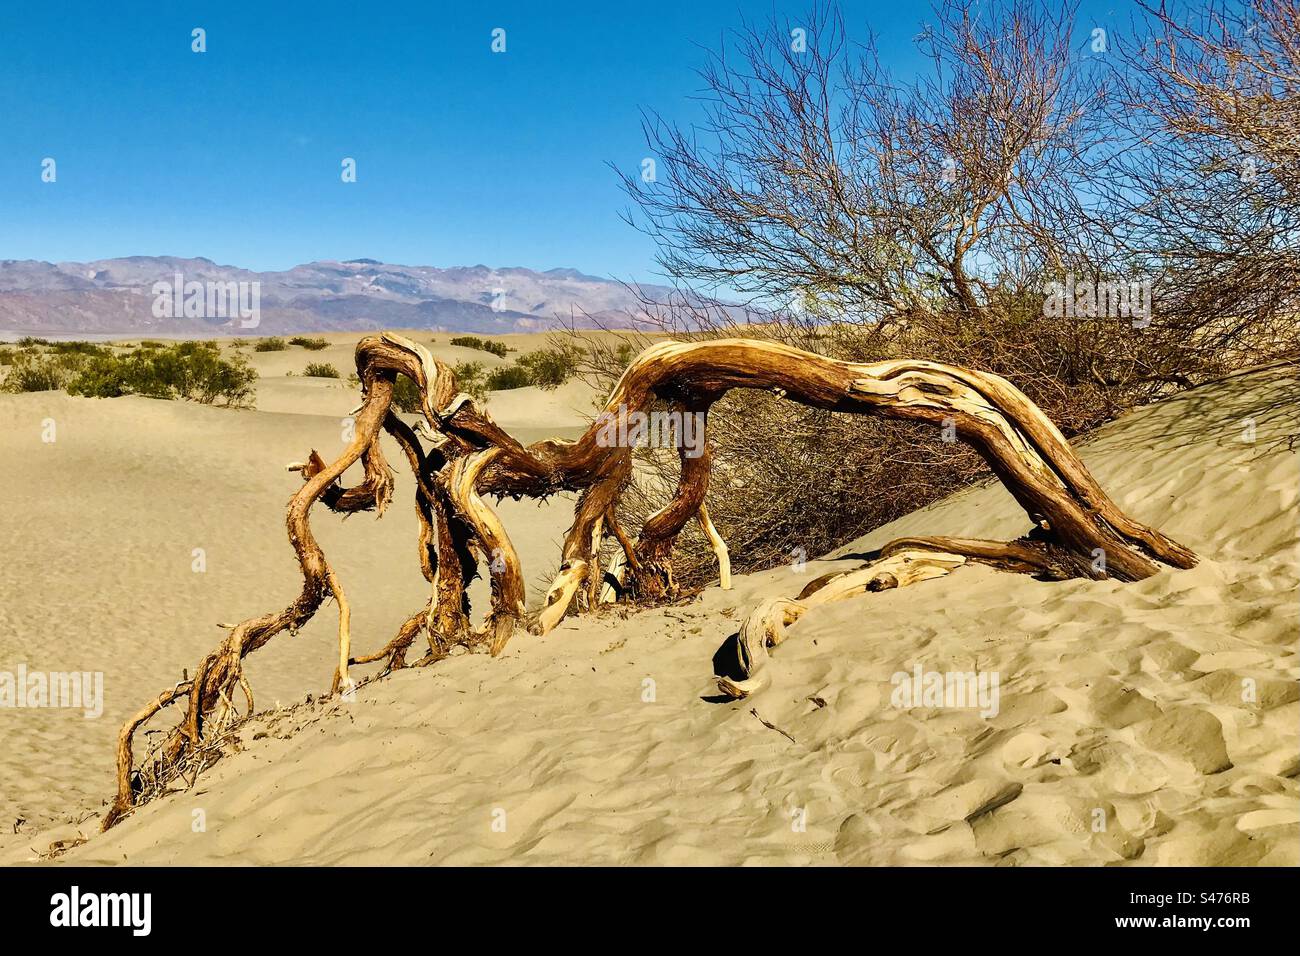 Les vents du désert ont soufflé sur cet arbre de Mesquite et ont façonné les dunes de Mesquite Flat dans le parc national de la Vallée de la mort. Banque D'Images